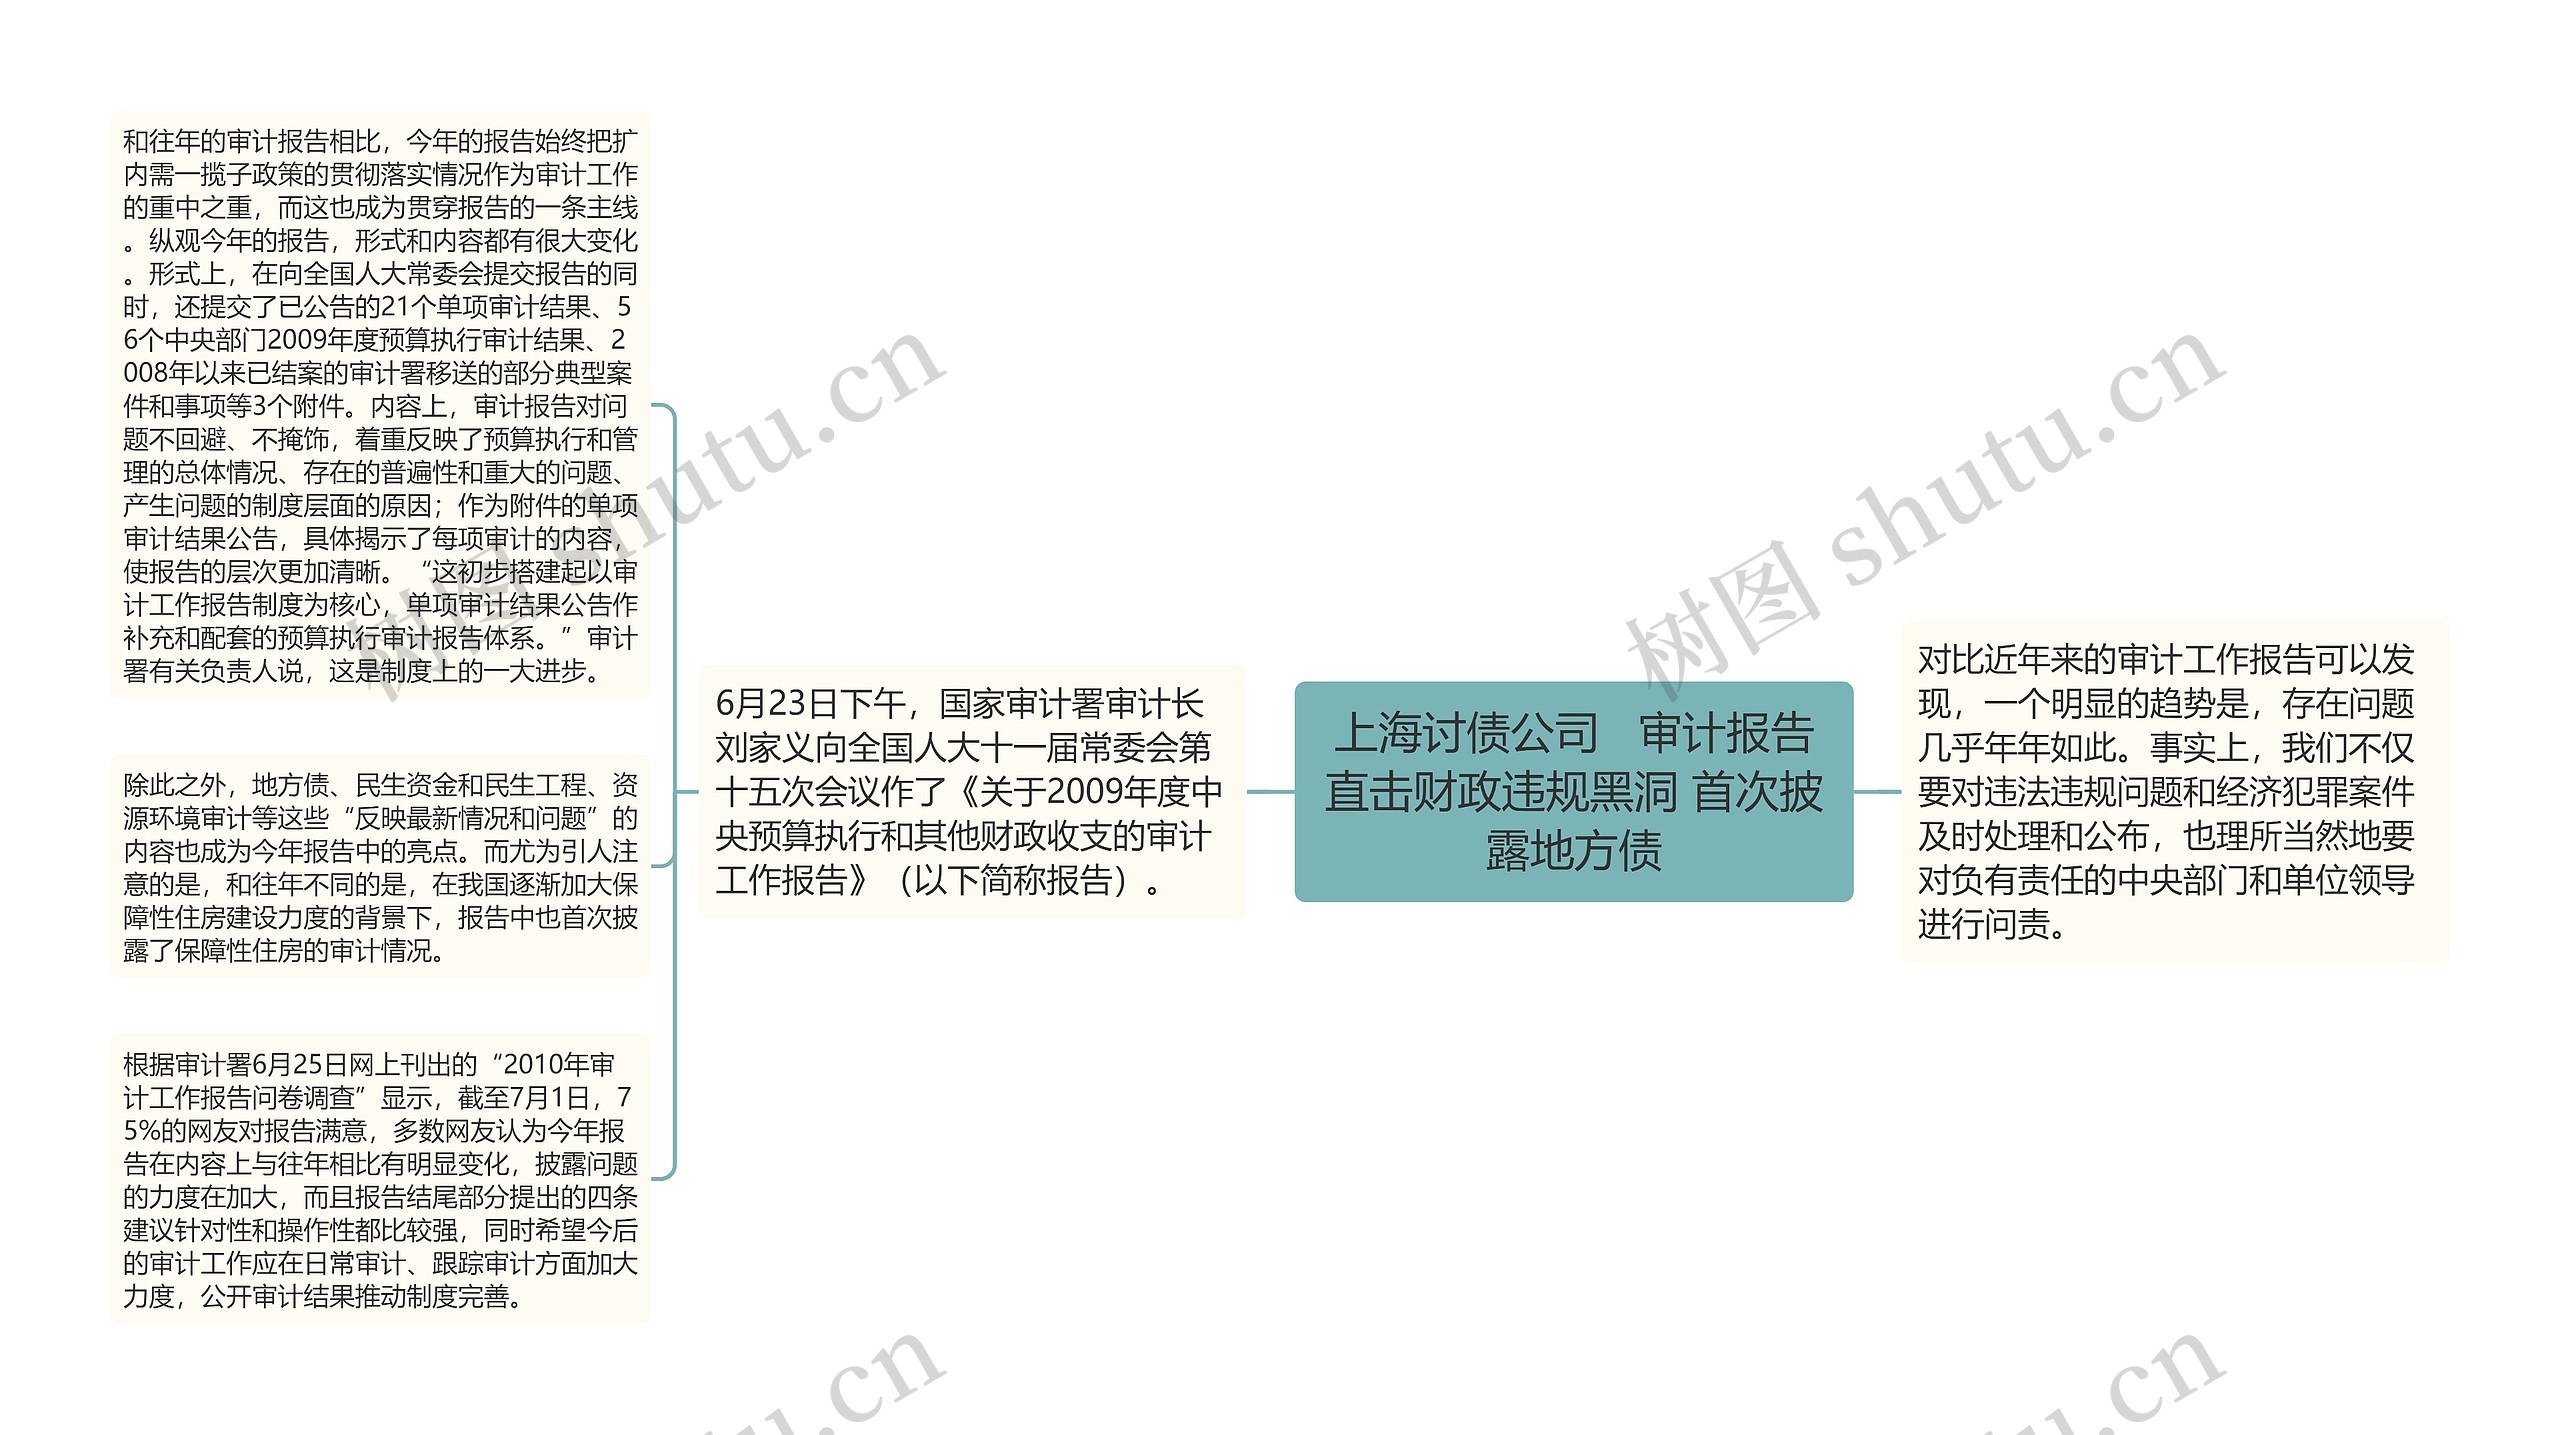 上海讨债公司   审计报告直击财政违规黑洞 首次披露地方债思维导图